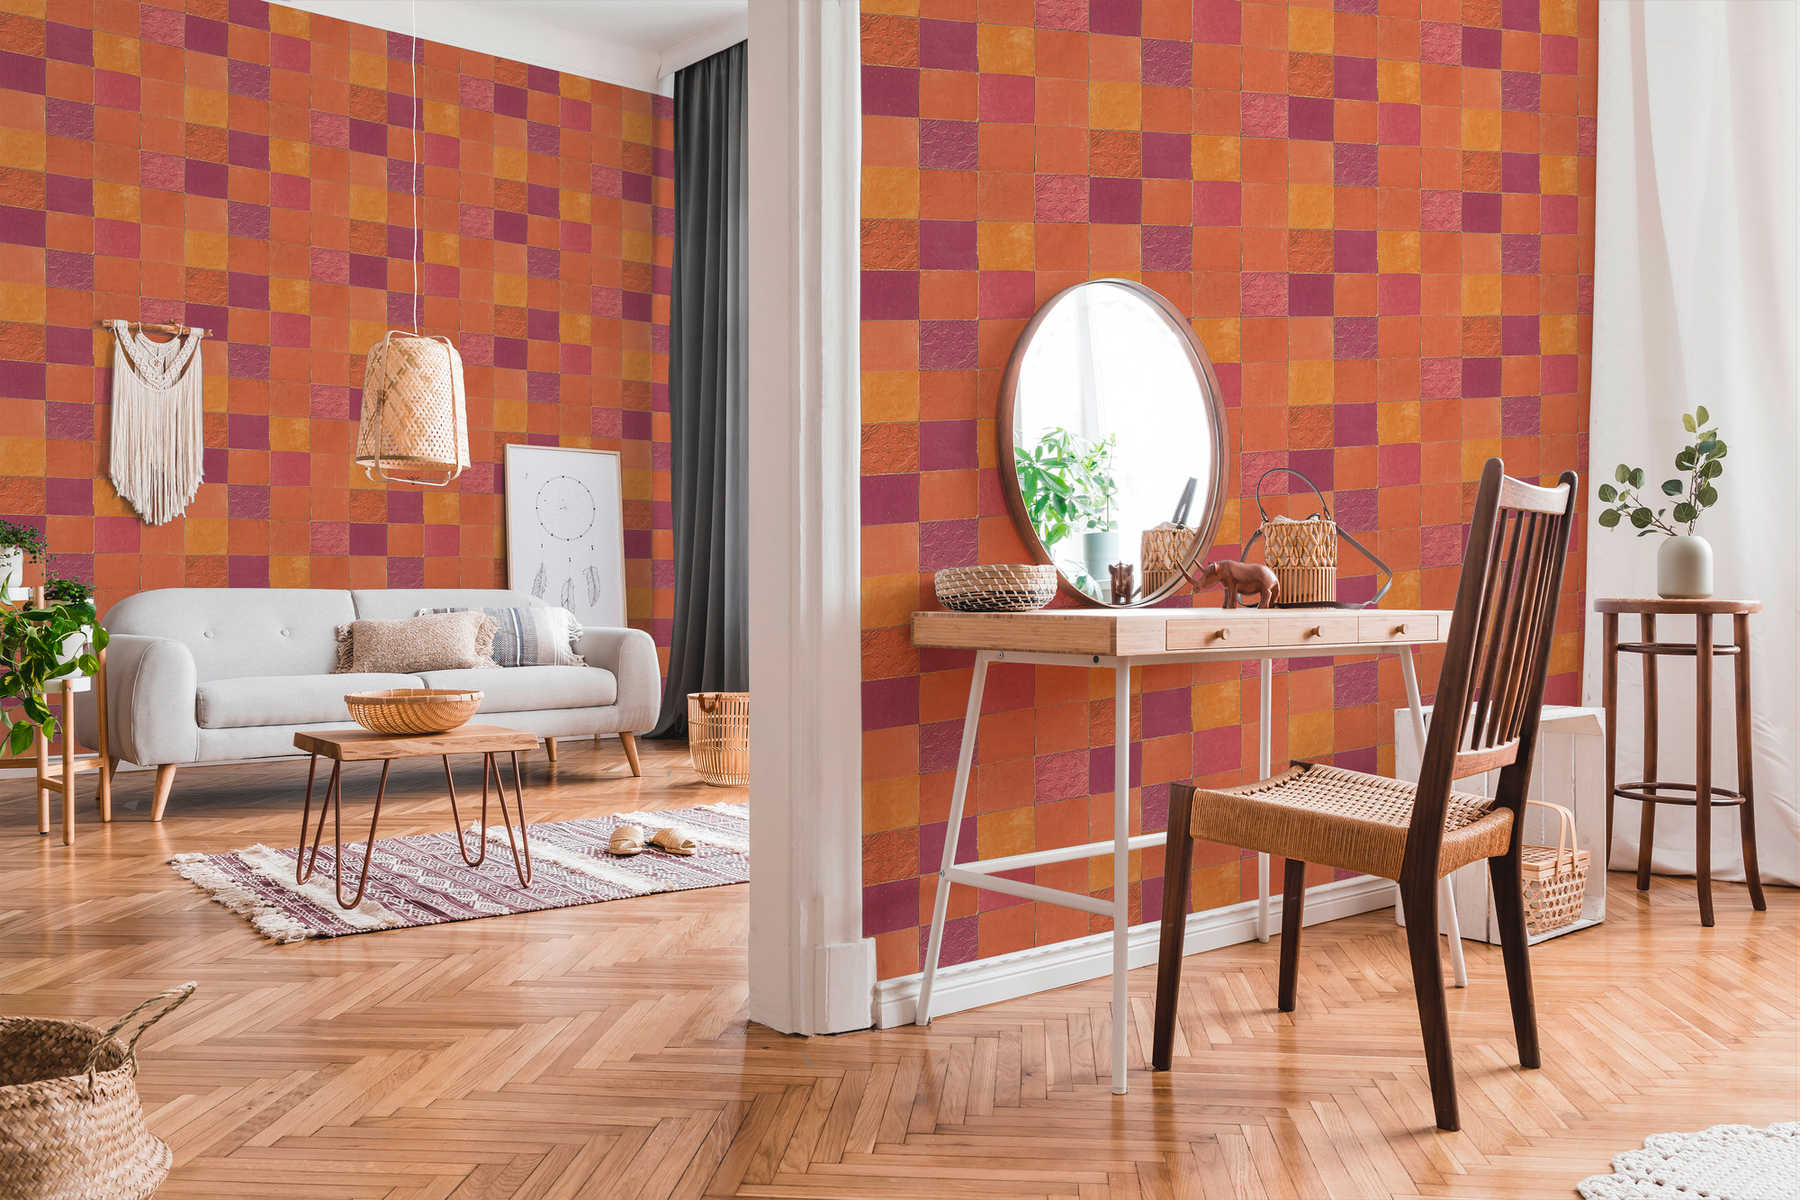             Tile wallpaper oriental mosaic - orange, red
        